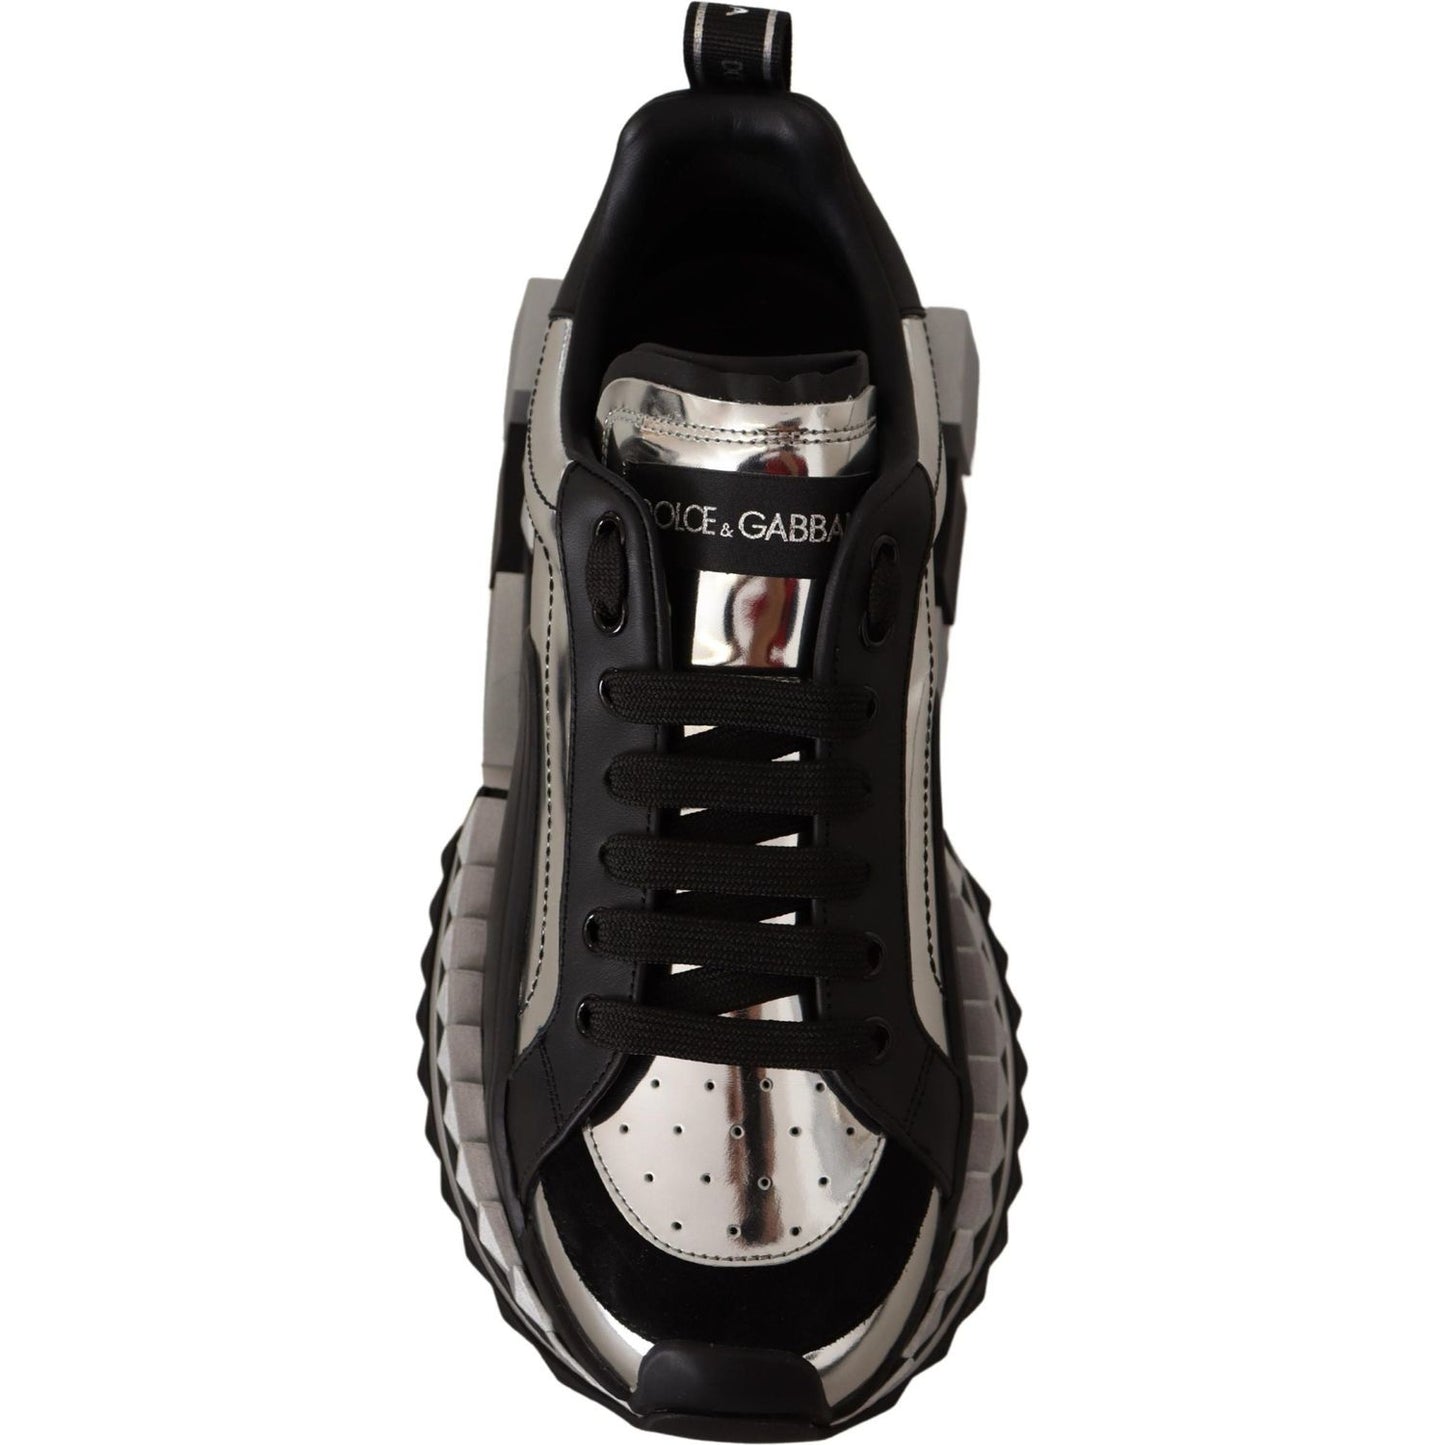 Dolce & Gabbana Elegant Super King Leather Sneakers - Silver & Black elegant-super-king-leather-sneakers-silver-black